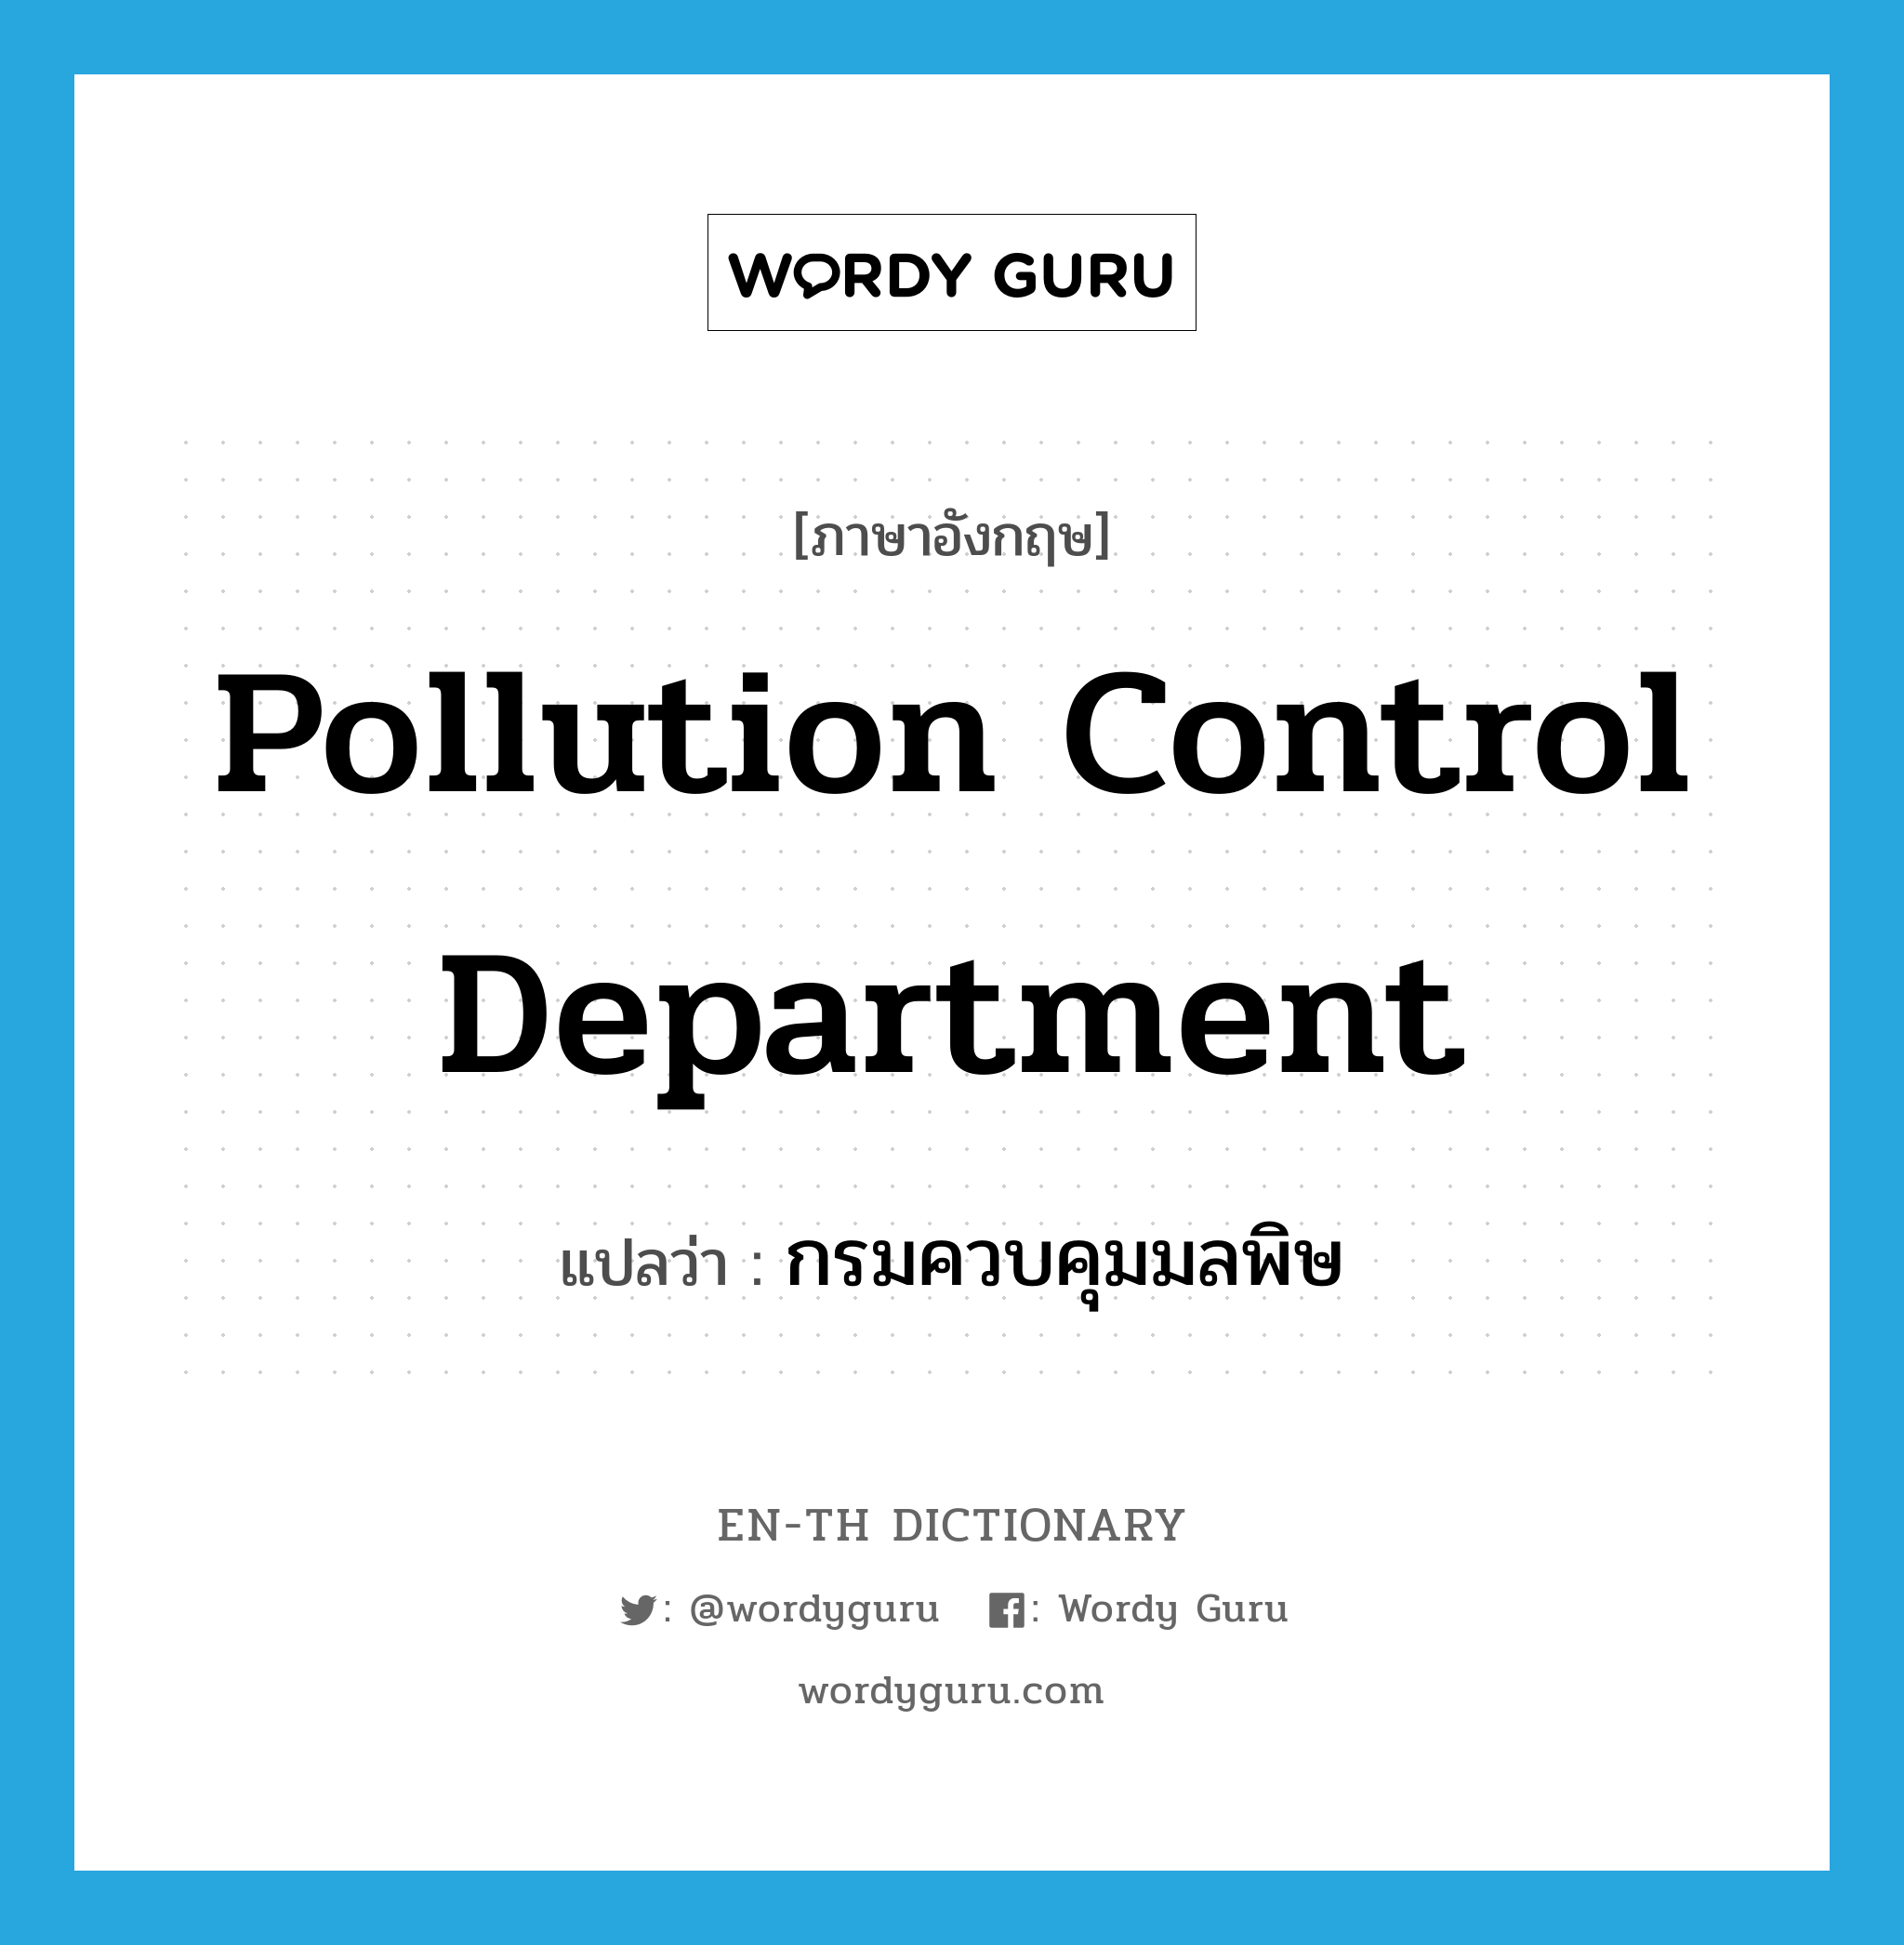 กรมควบคุมมลพิษ ภาษาอังกฤษ?, คำศัพท์ภาษาอังกฤษ กรมควบคุมมลพิษ แปลว่า Pollution Control Department ประเภท N หมวด N